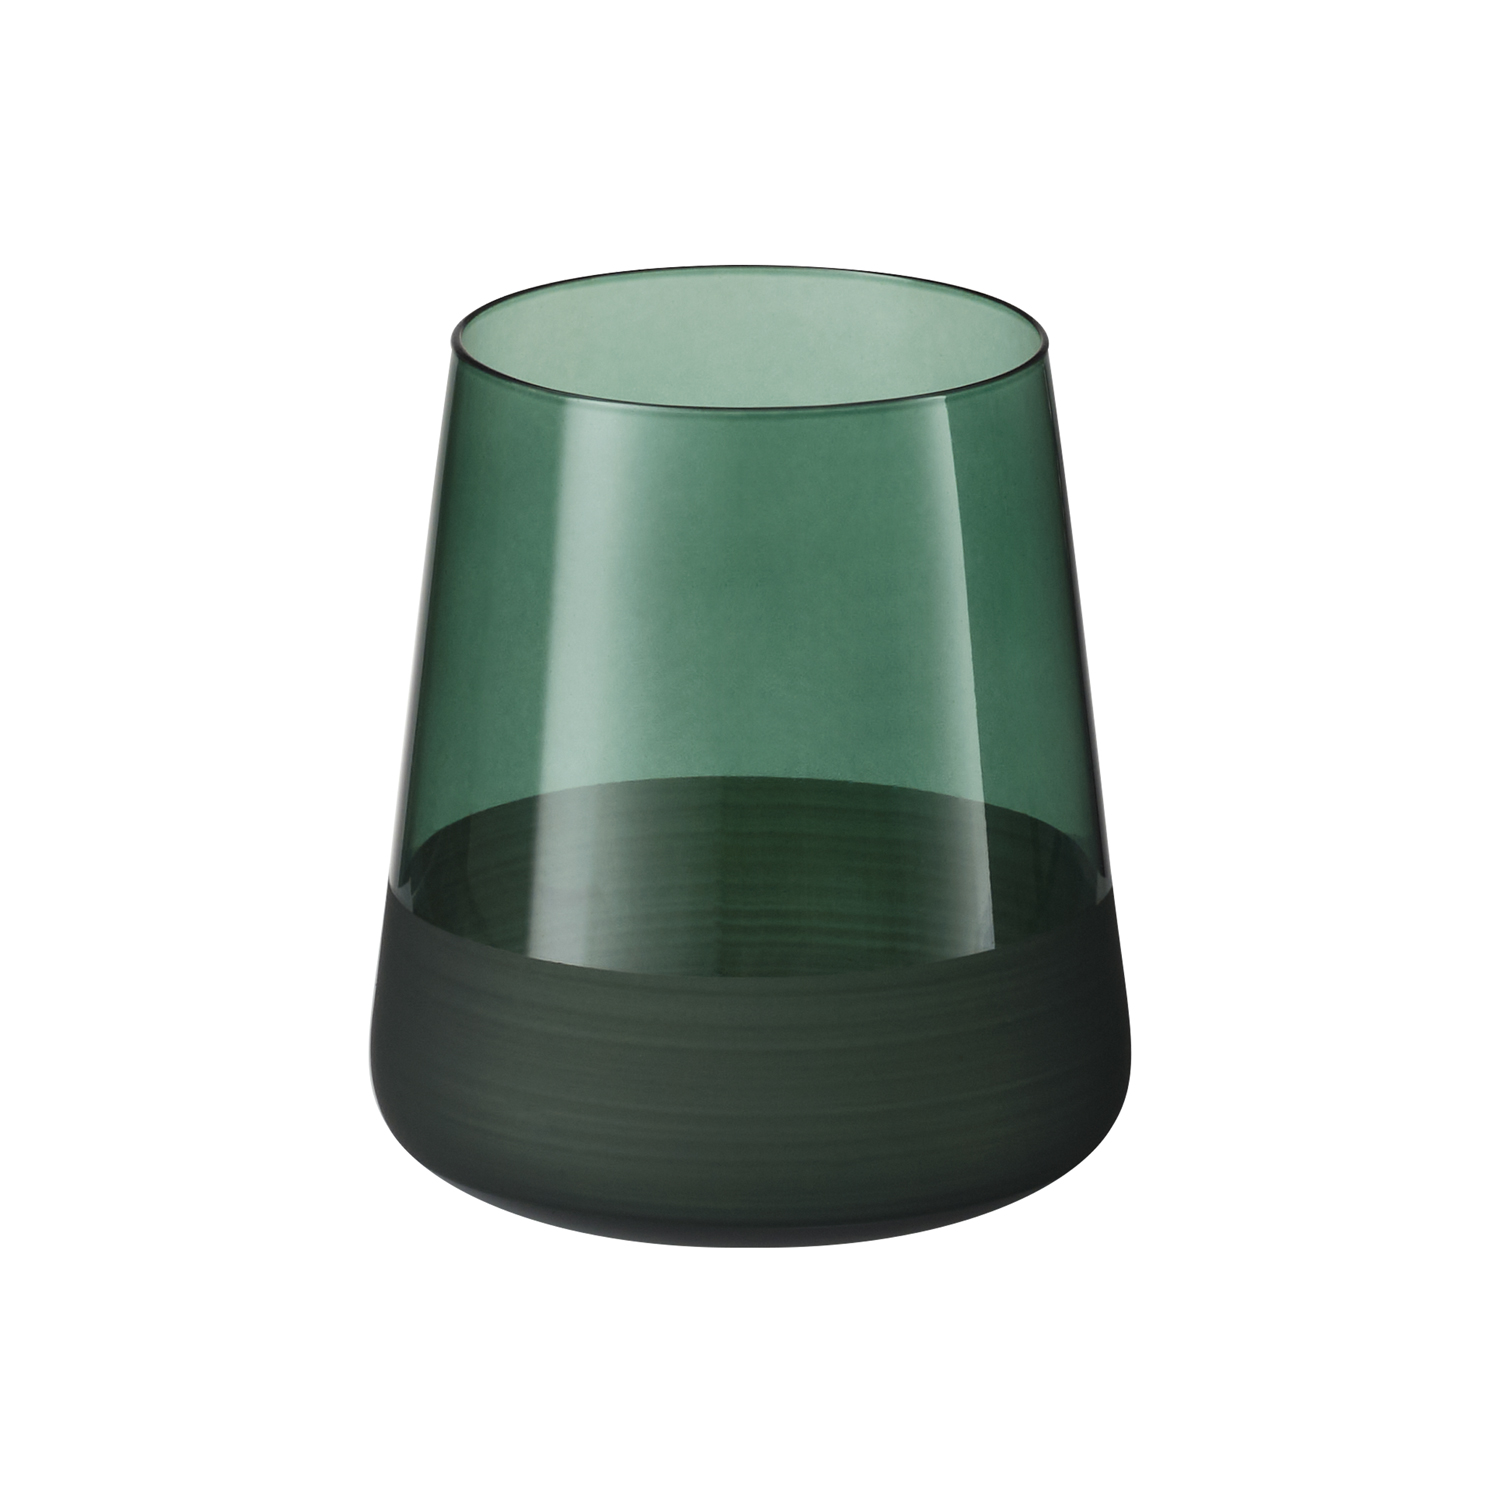 Артикул: A73075.040 — Стакан для воды, Emerald, 380 ml, зеленый